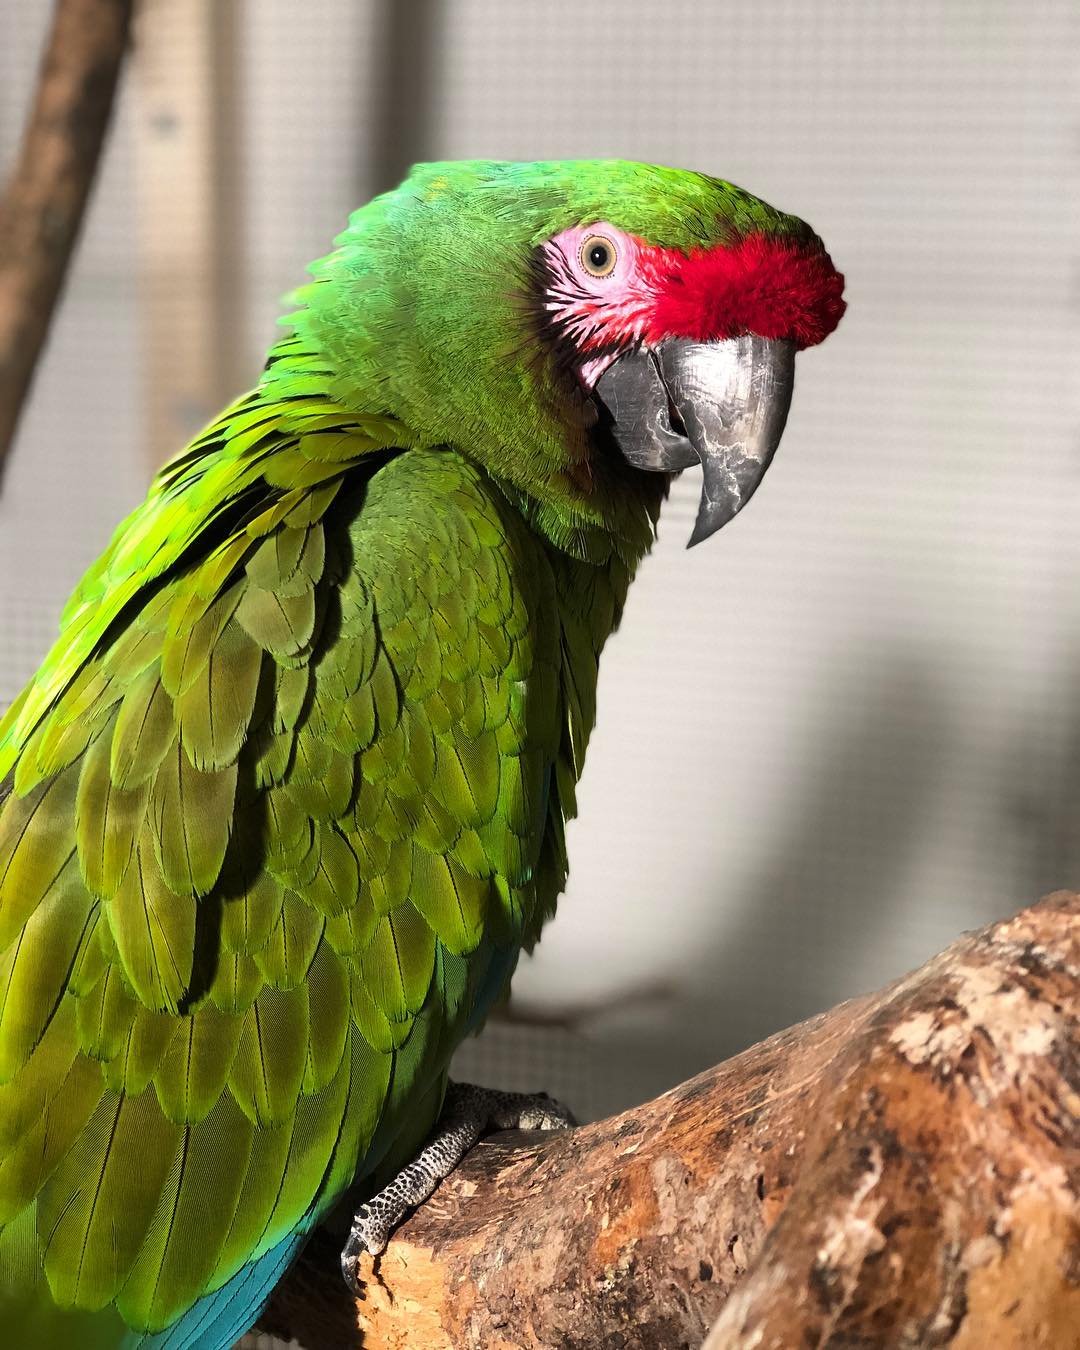 Разновидности попугаев ара и особенности их внешности